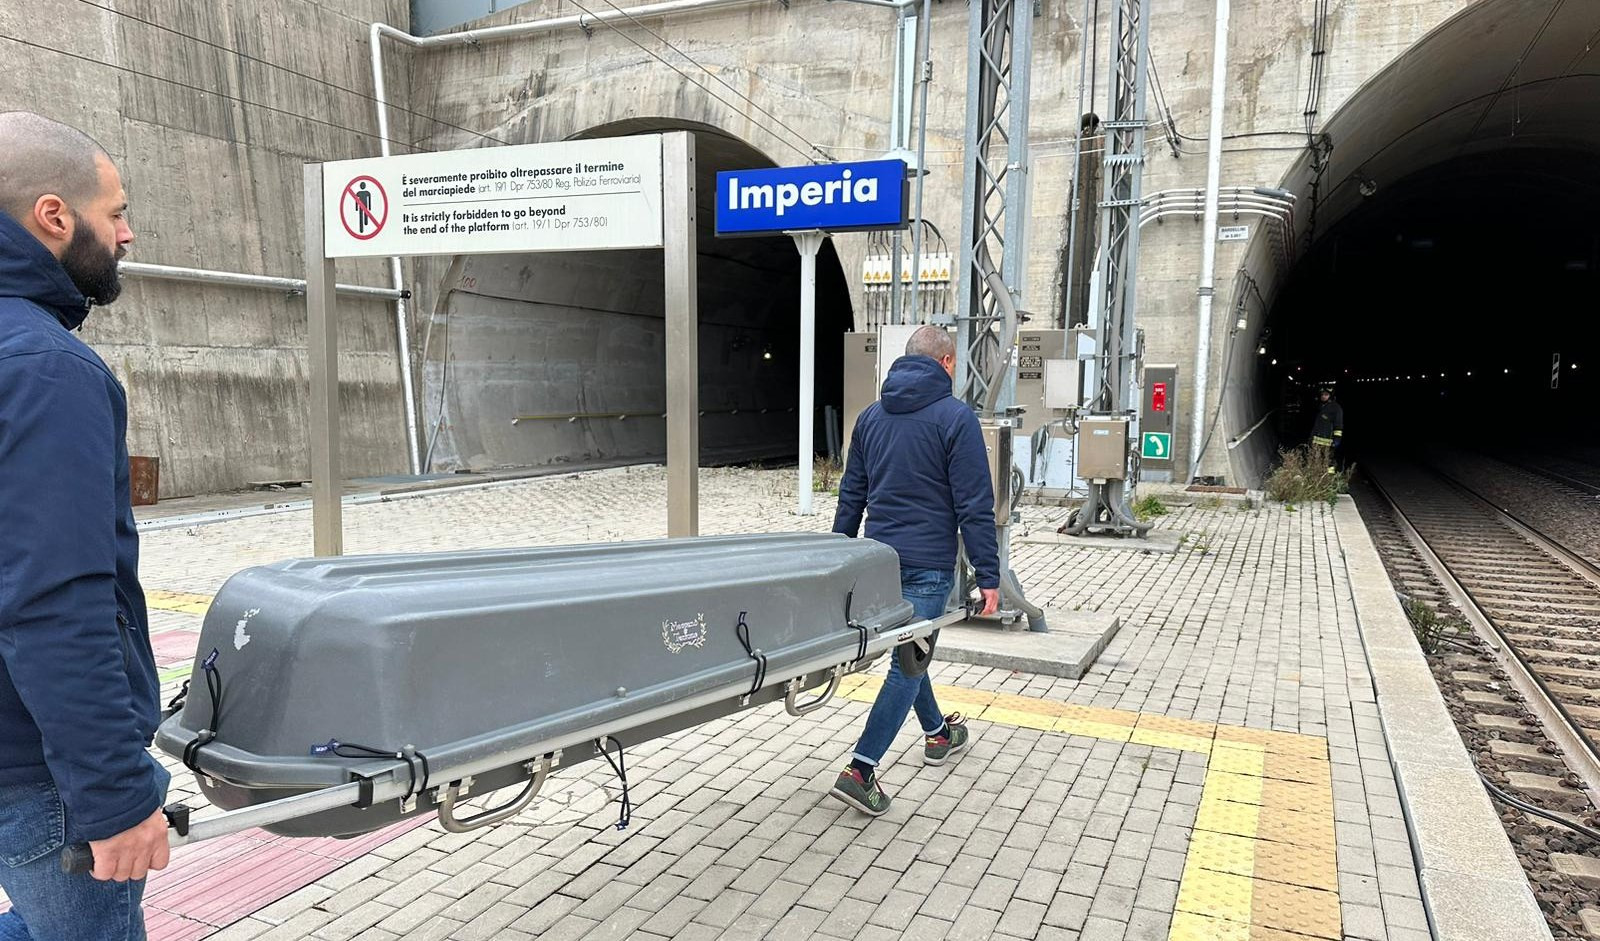 Uomo muore travolto da treno: ripresa circolazione tra Genova-Ventimiglia